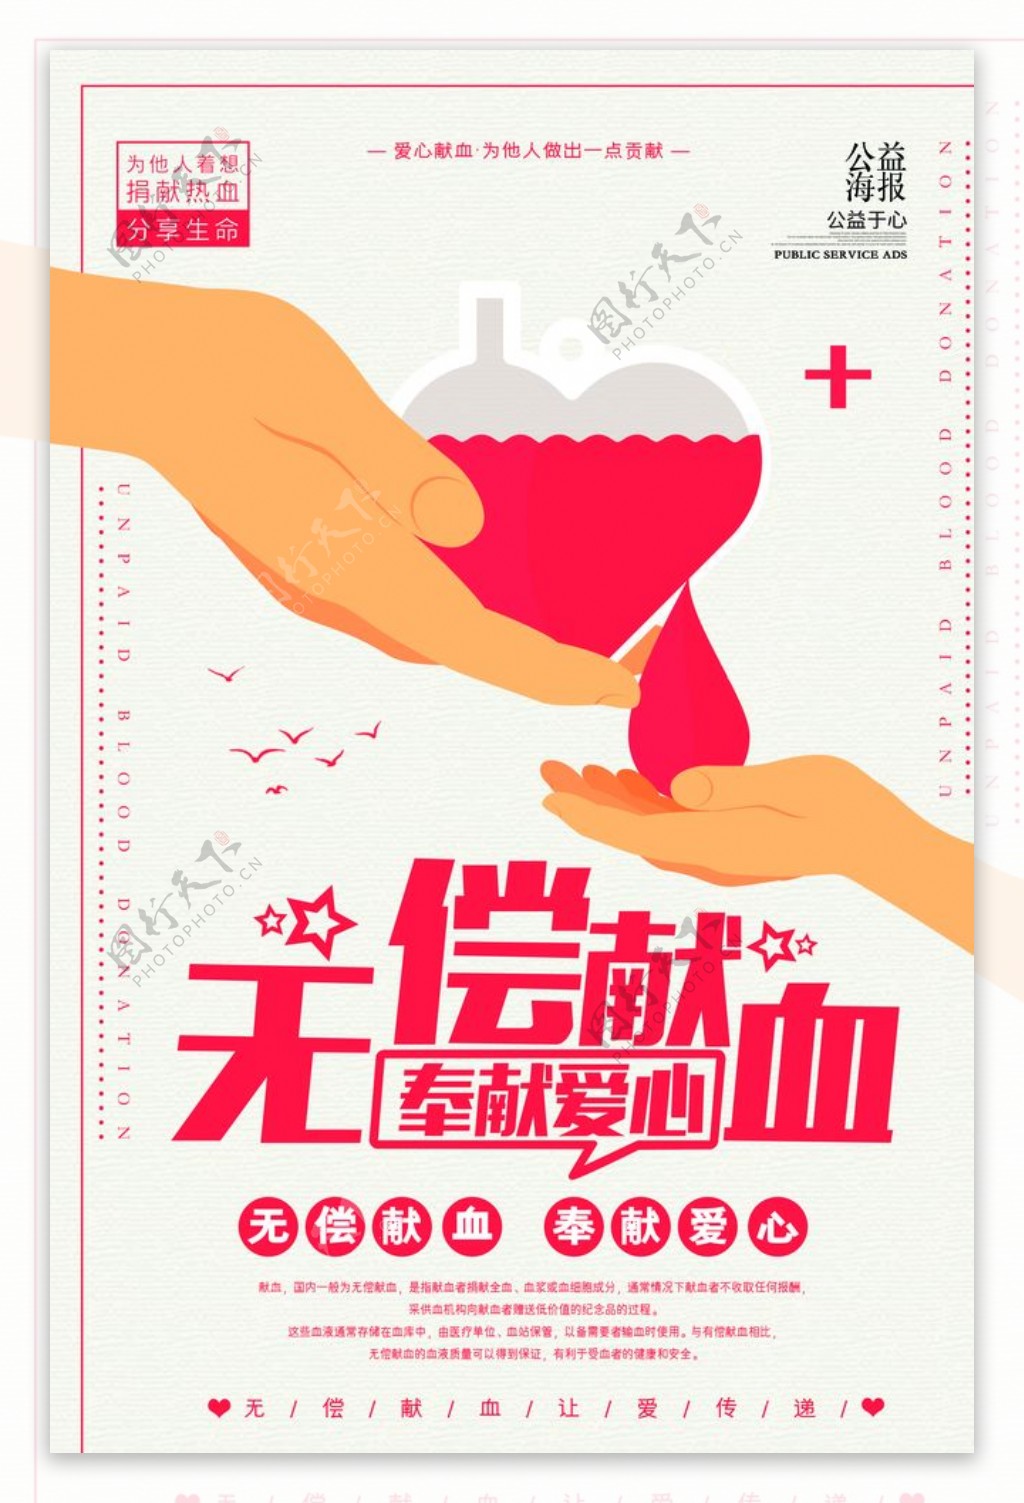 简约时尚大气献血公益海报设计